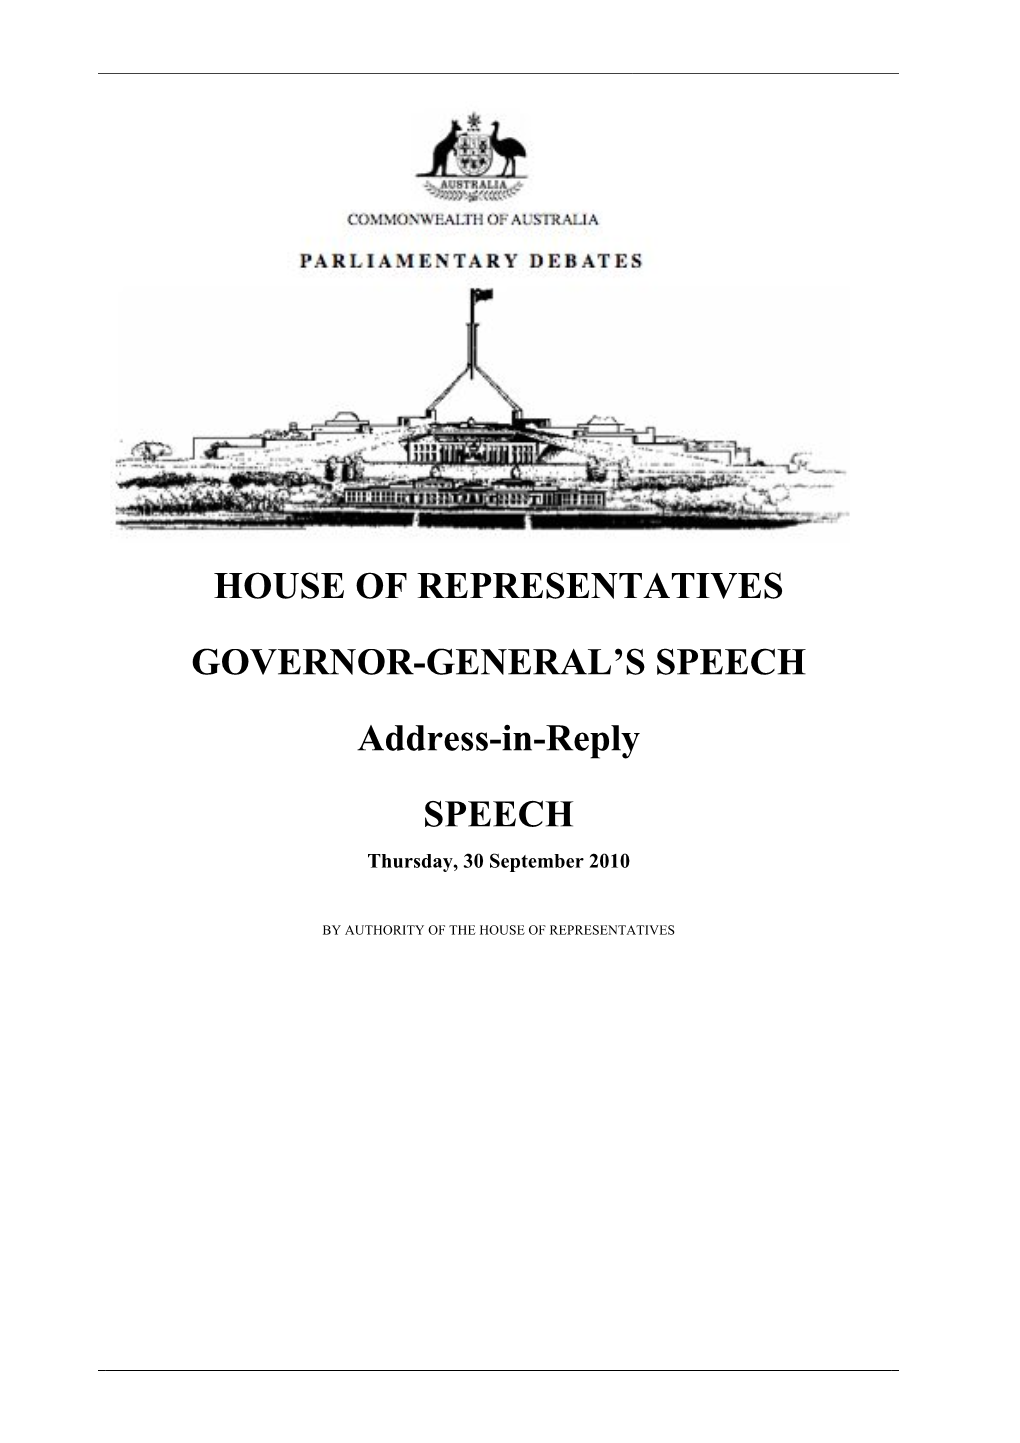 House of Representatives Governor